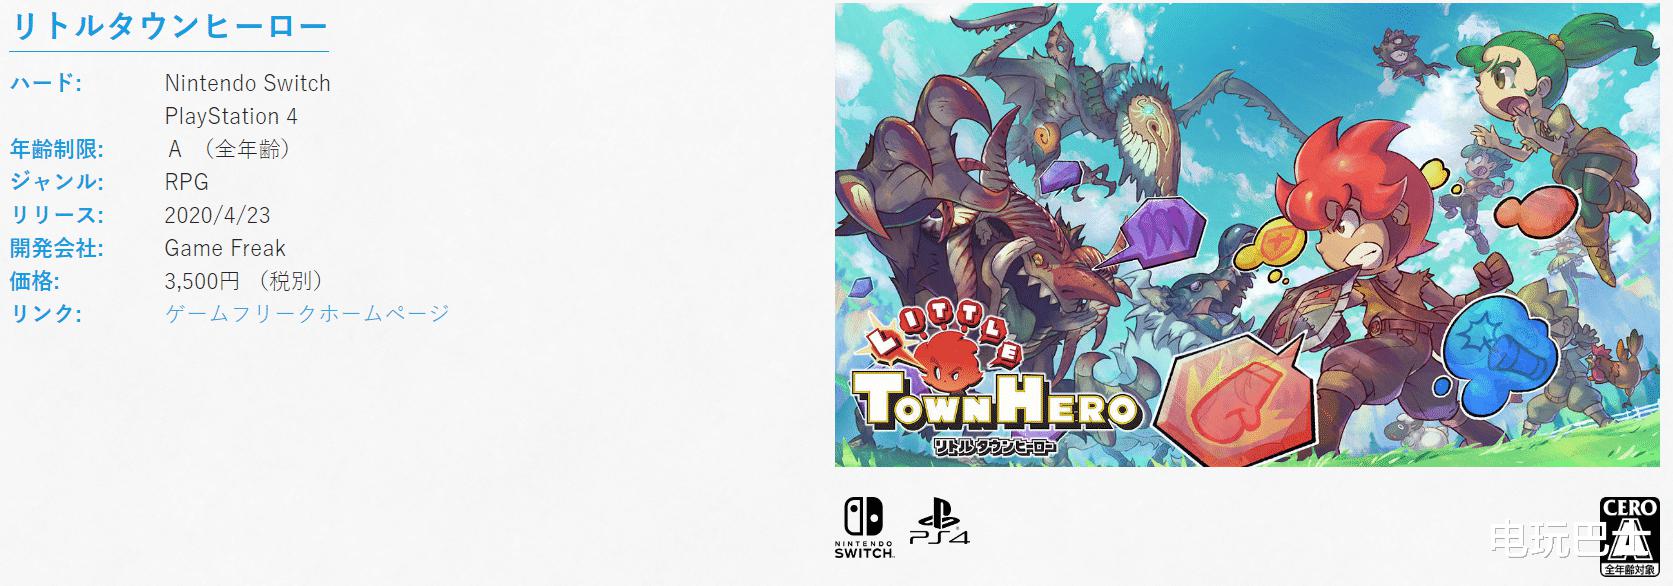 《小镇英雄》即将于4月23日登陆索尼PS4主机(1)